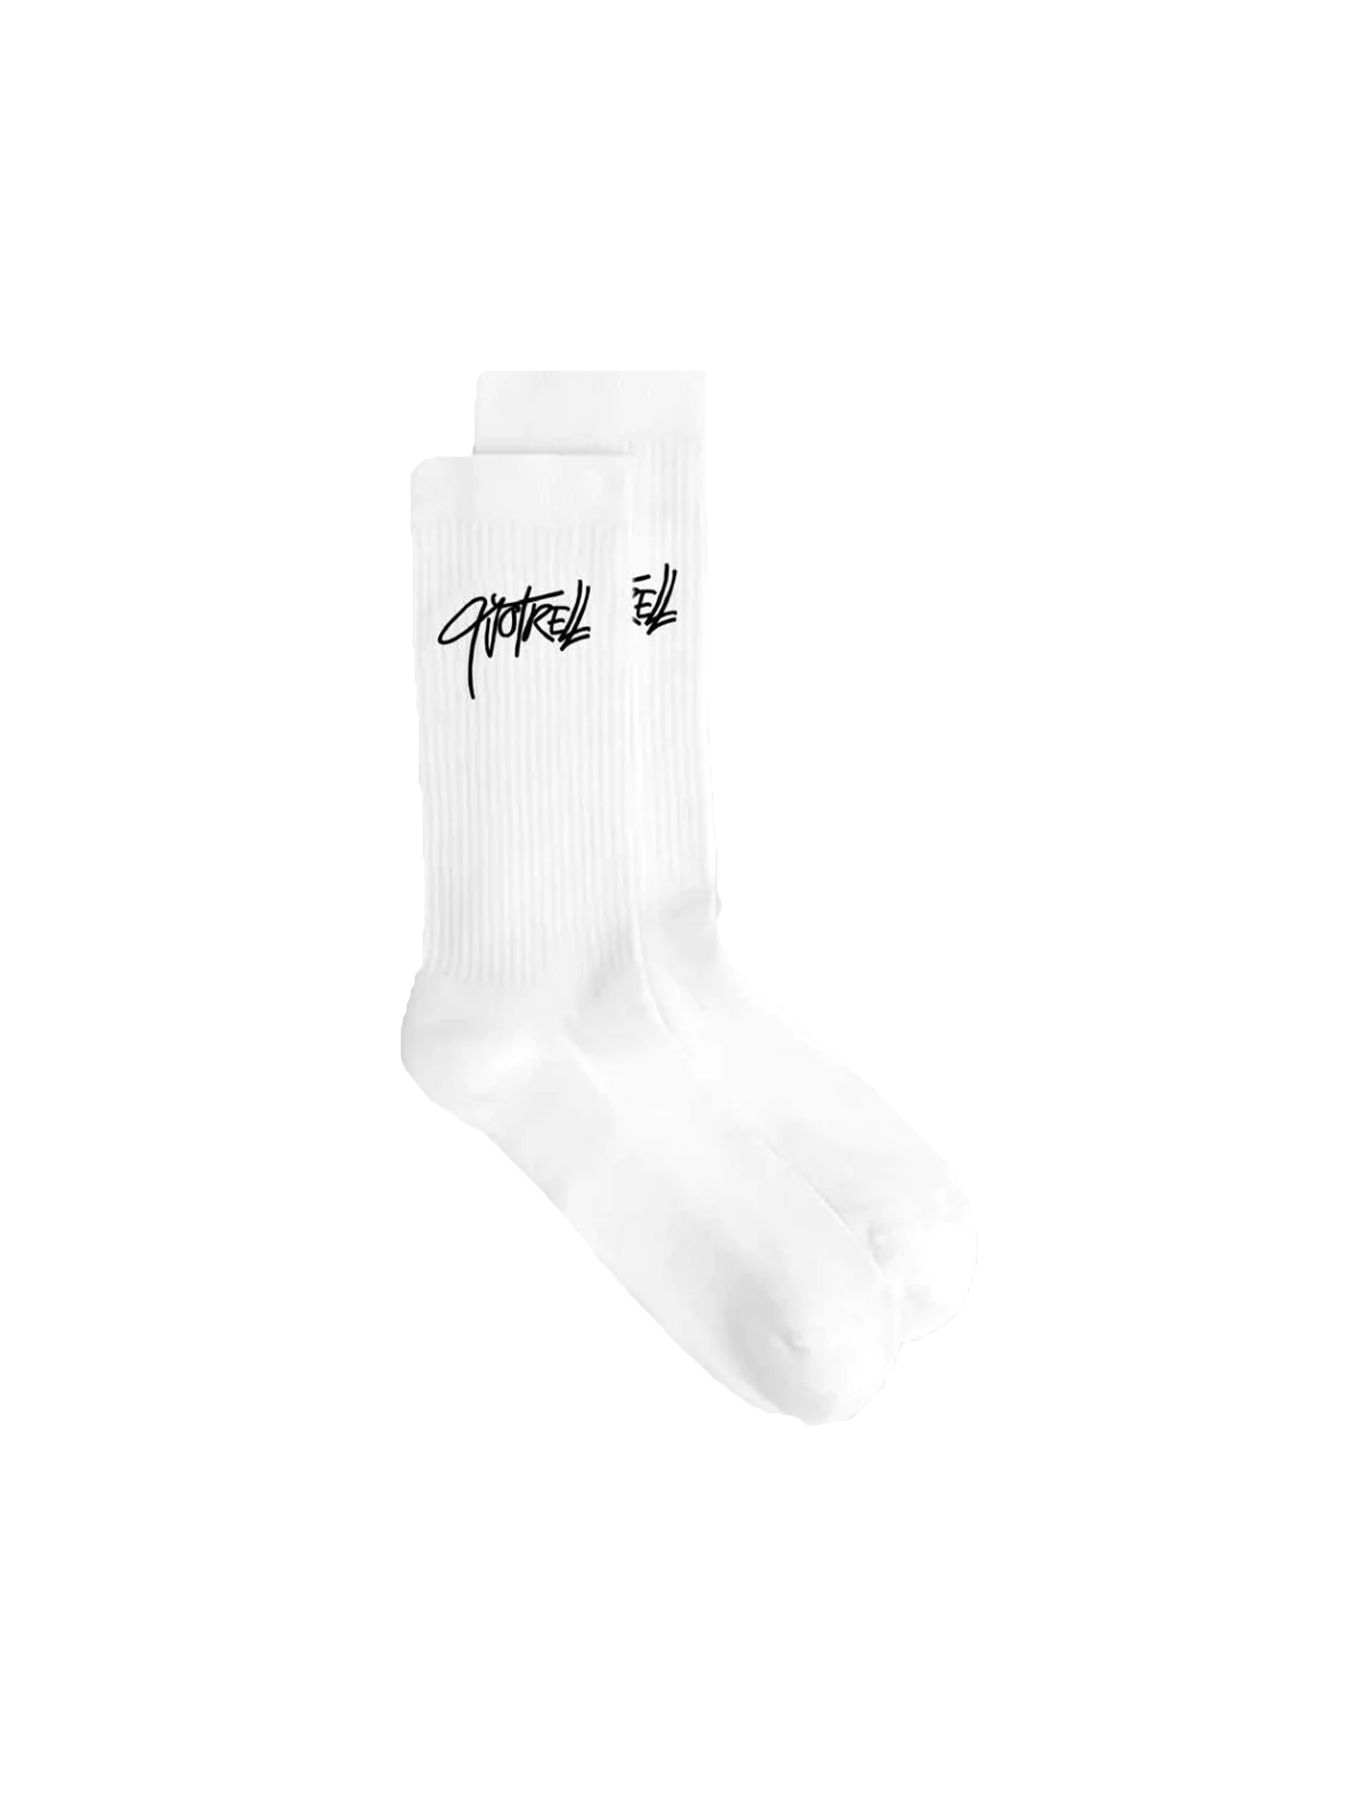 Quotrell Monterey socks 2 pack White/black 2900139194091